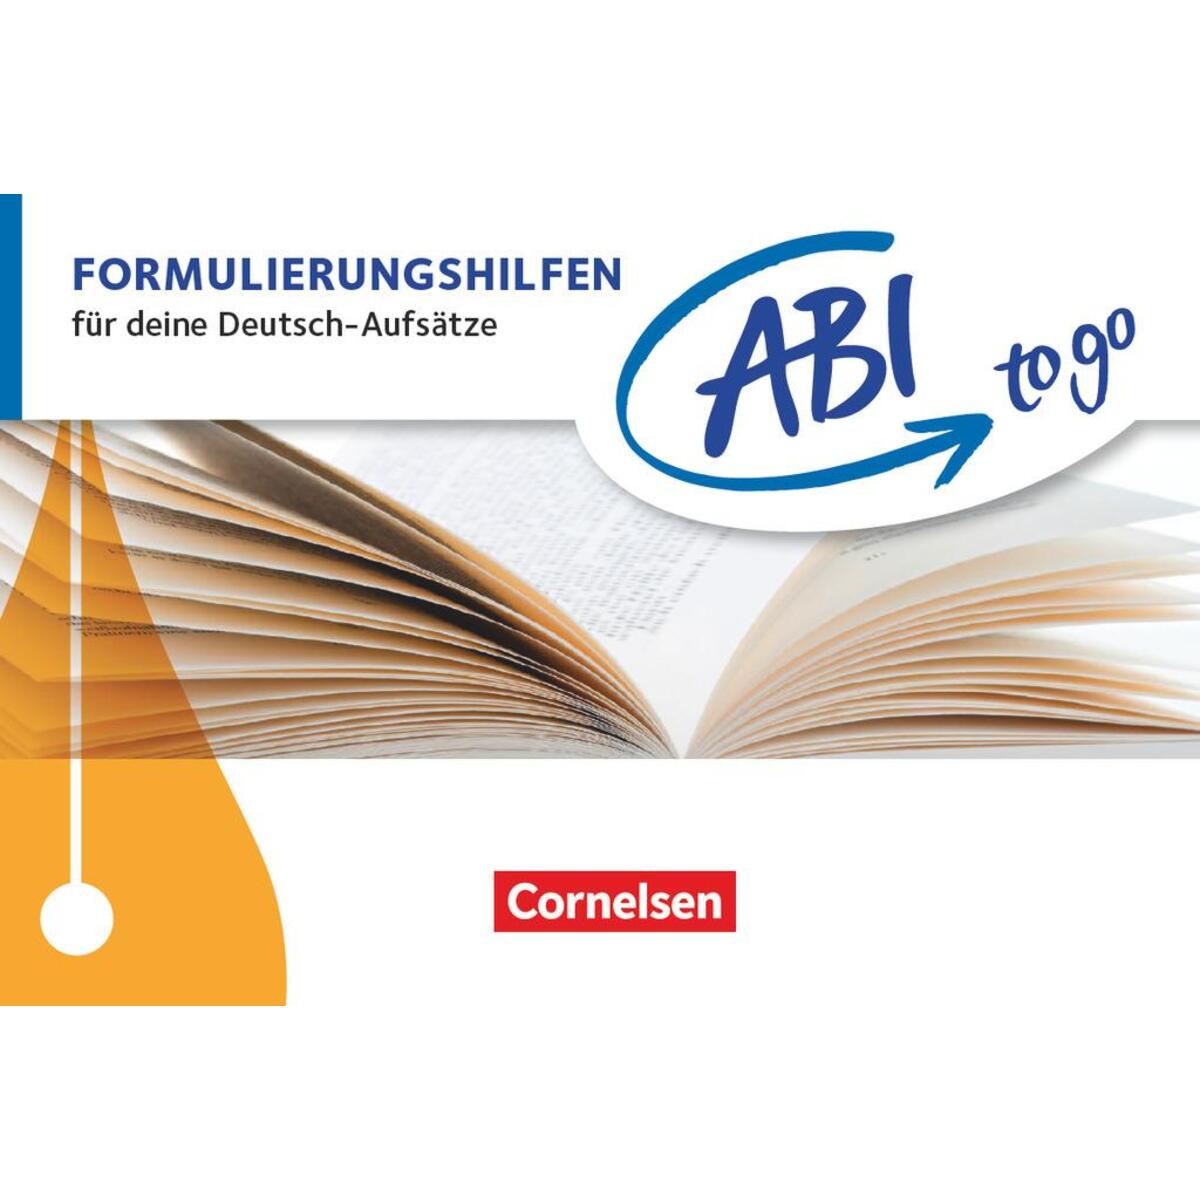 Formulierungshilfen von Cornelsen Verlag GmbH